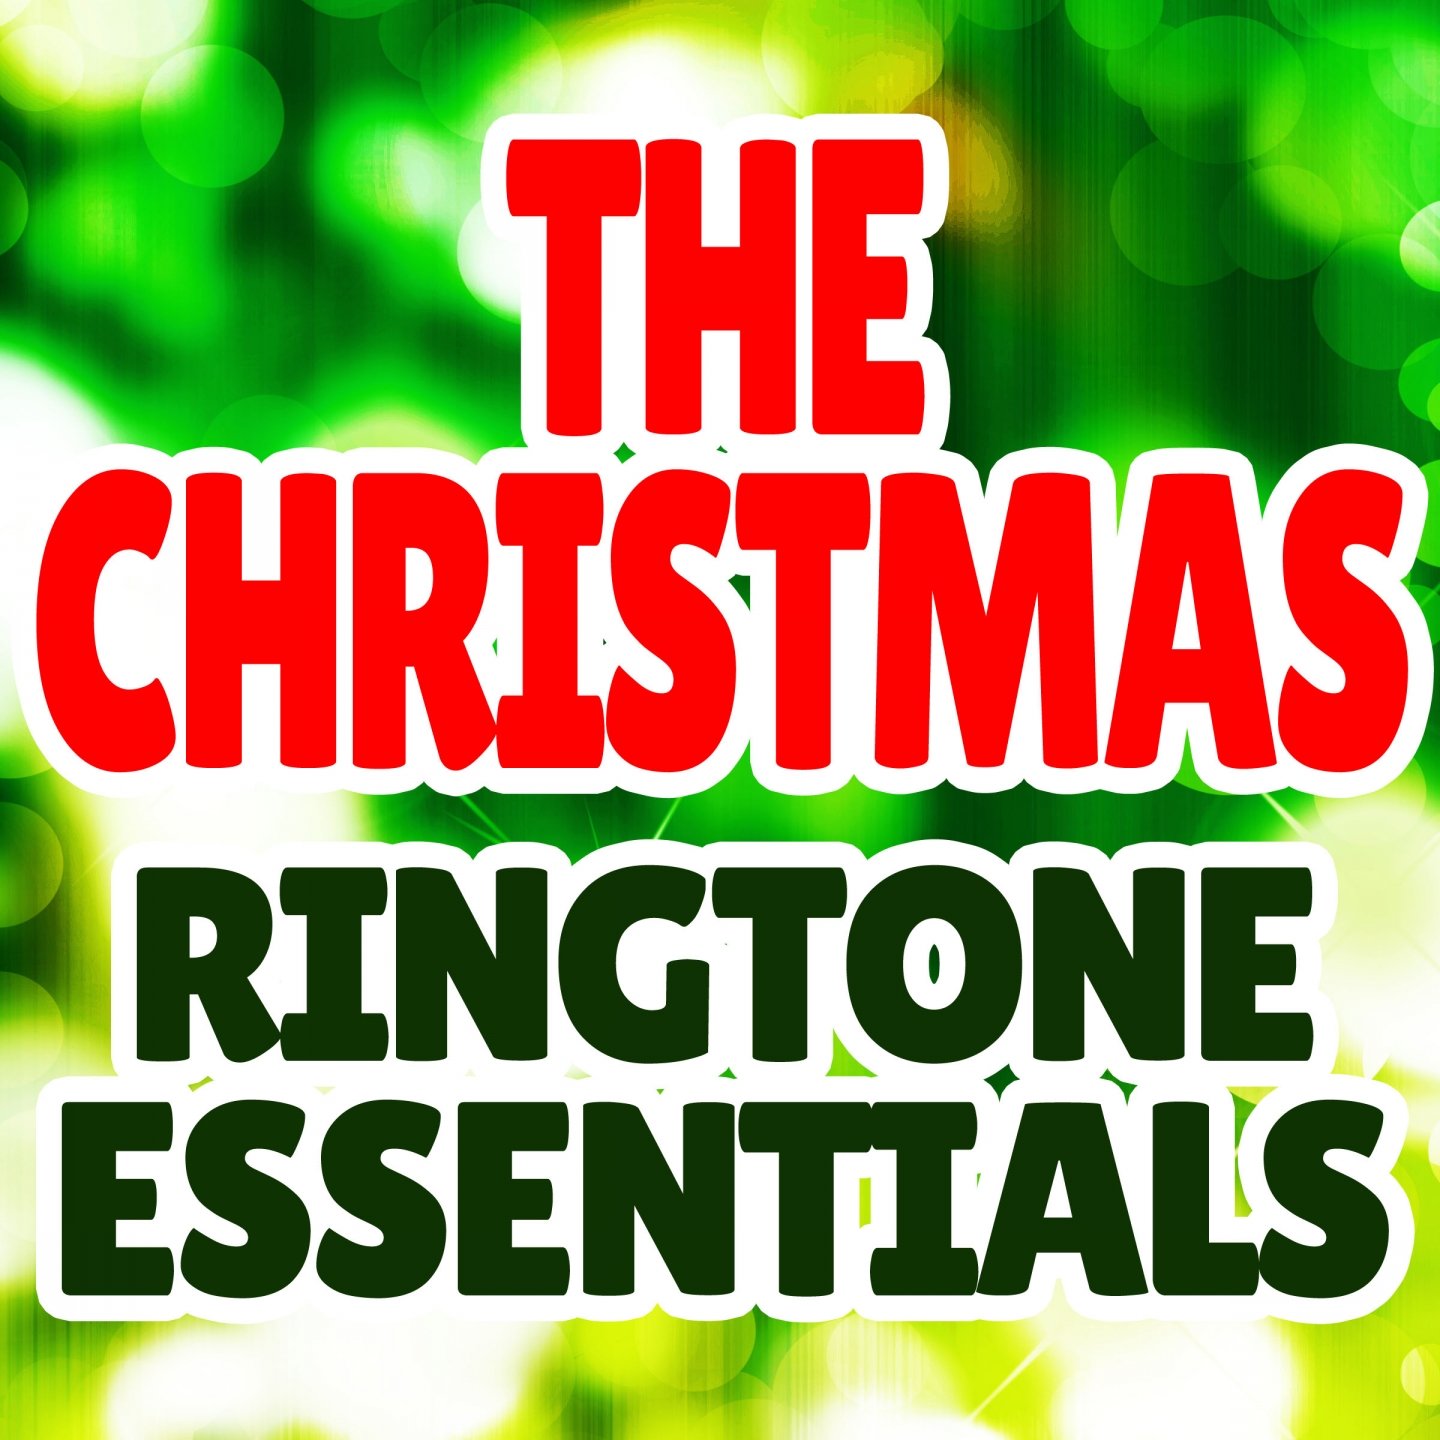 The Christmas Ringtone Essentials